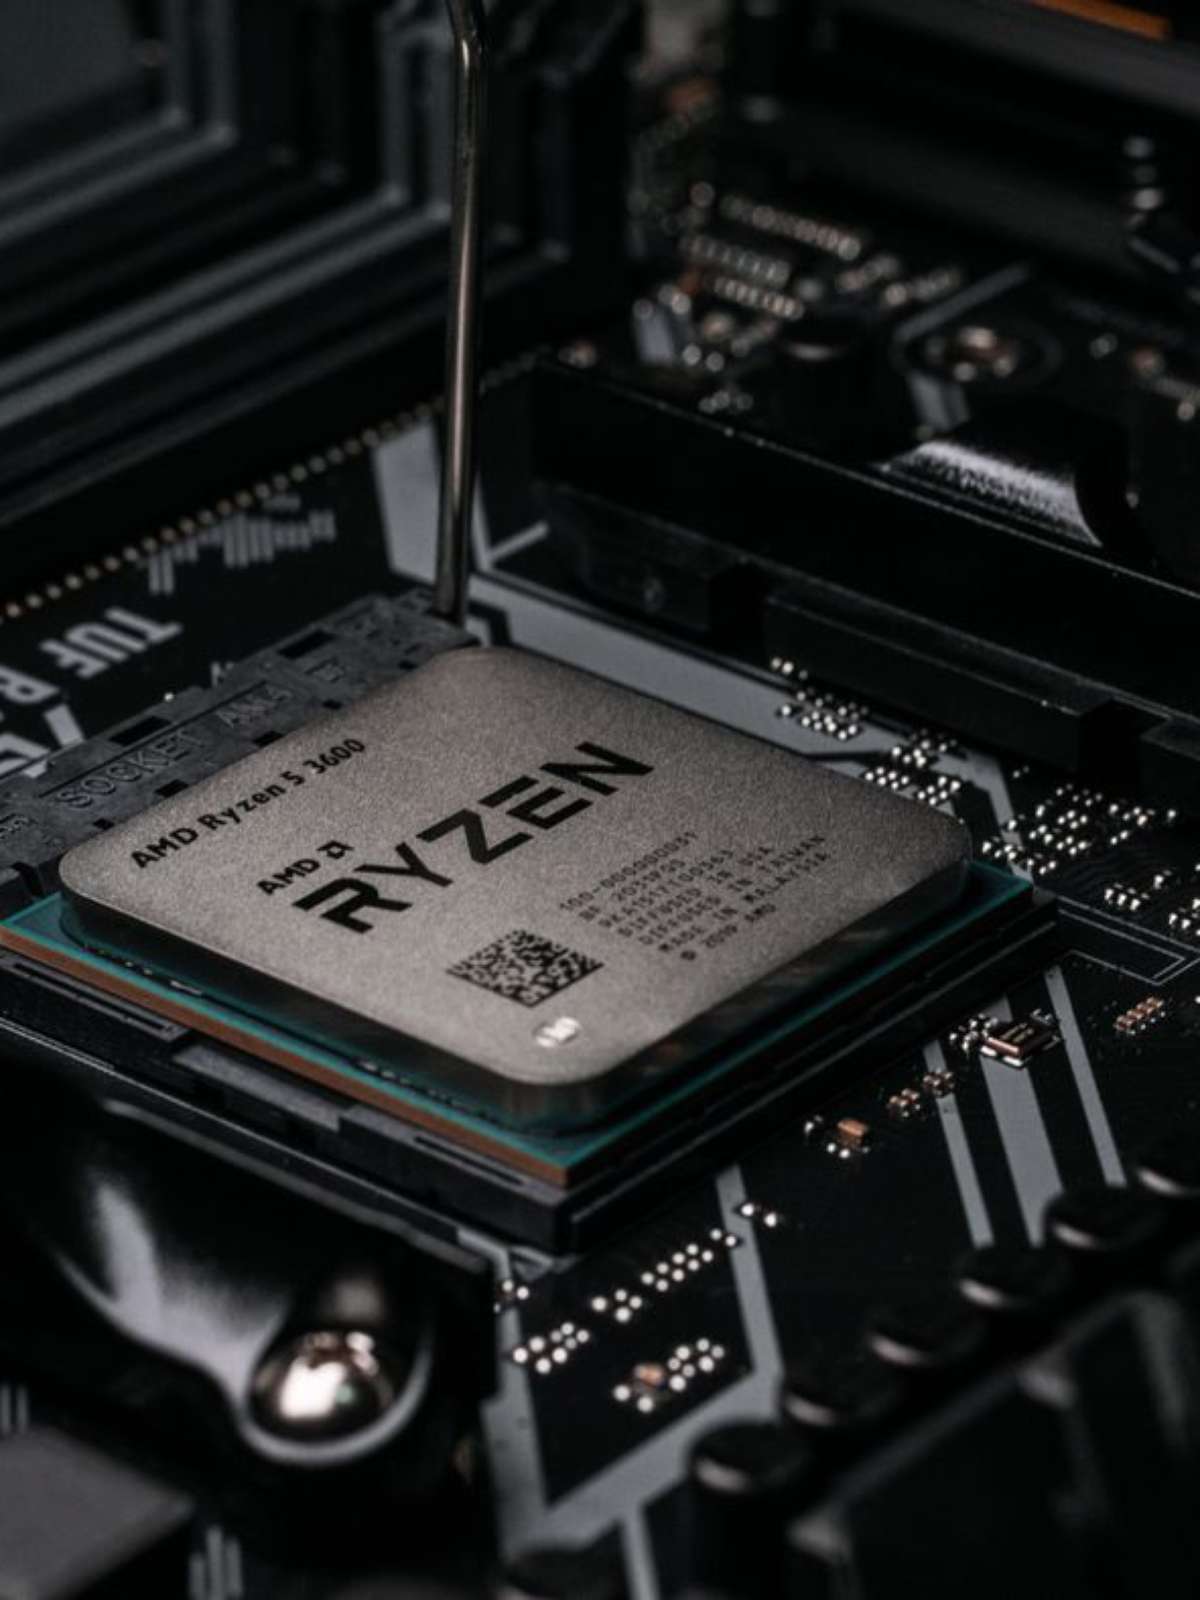 AMD Ryzen 5 3600 é bom? Entenda prós e contras do processador